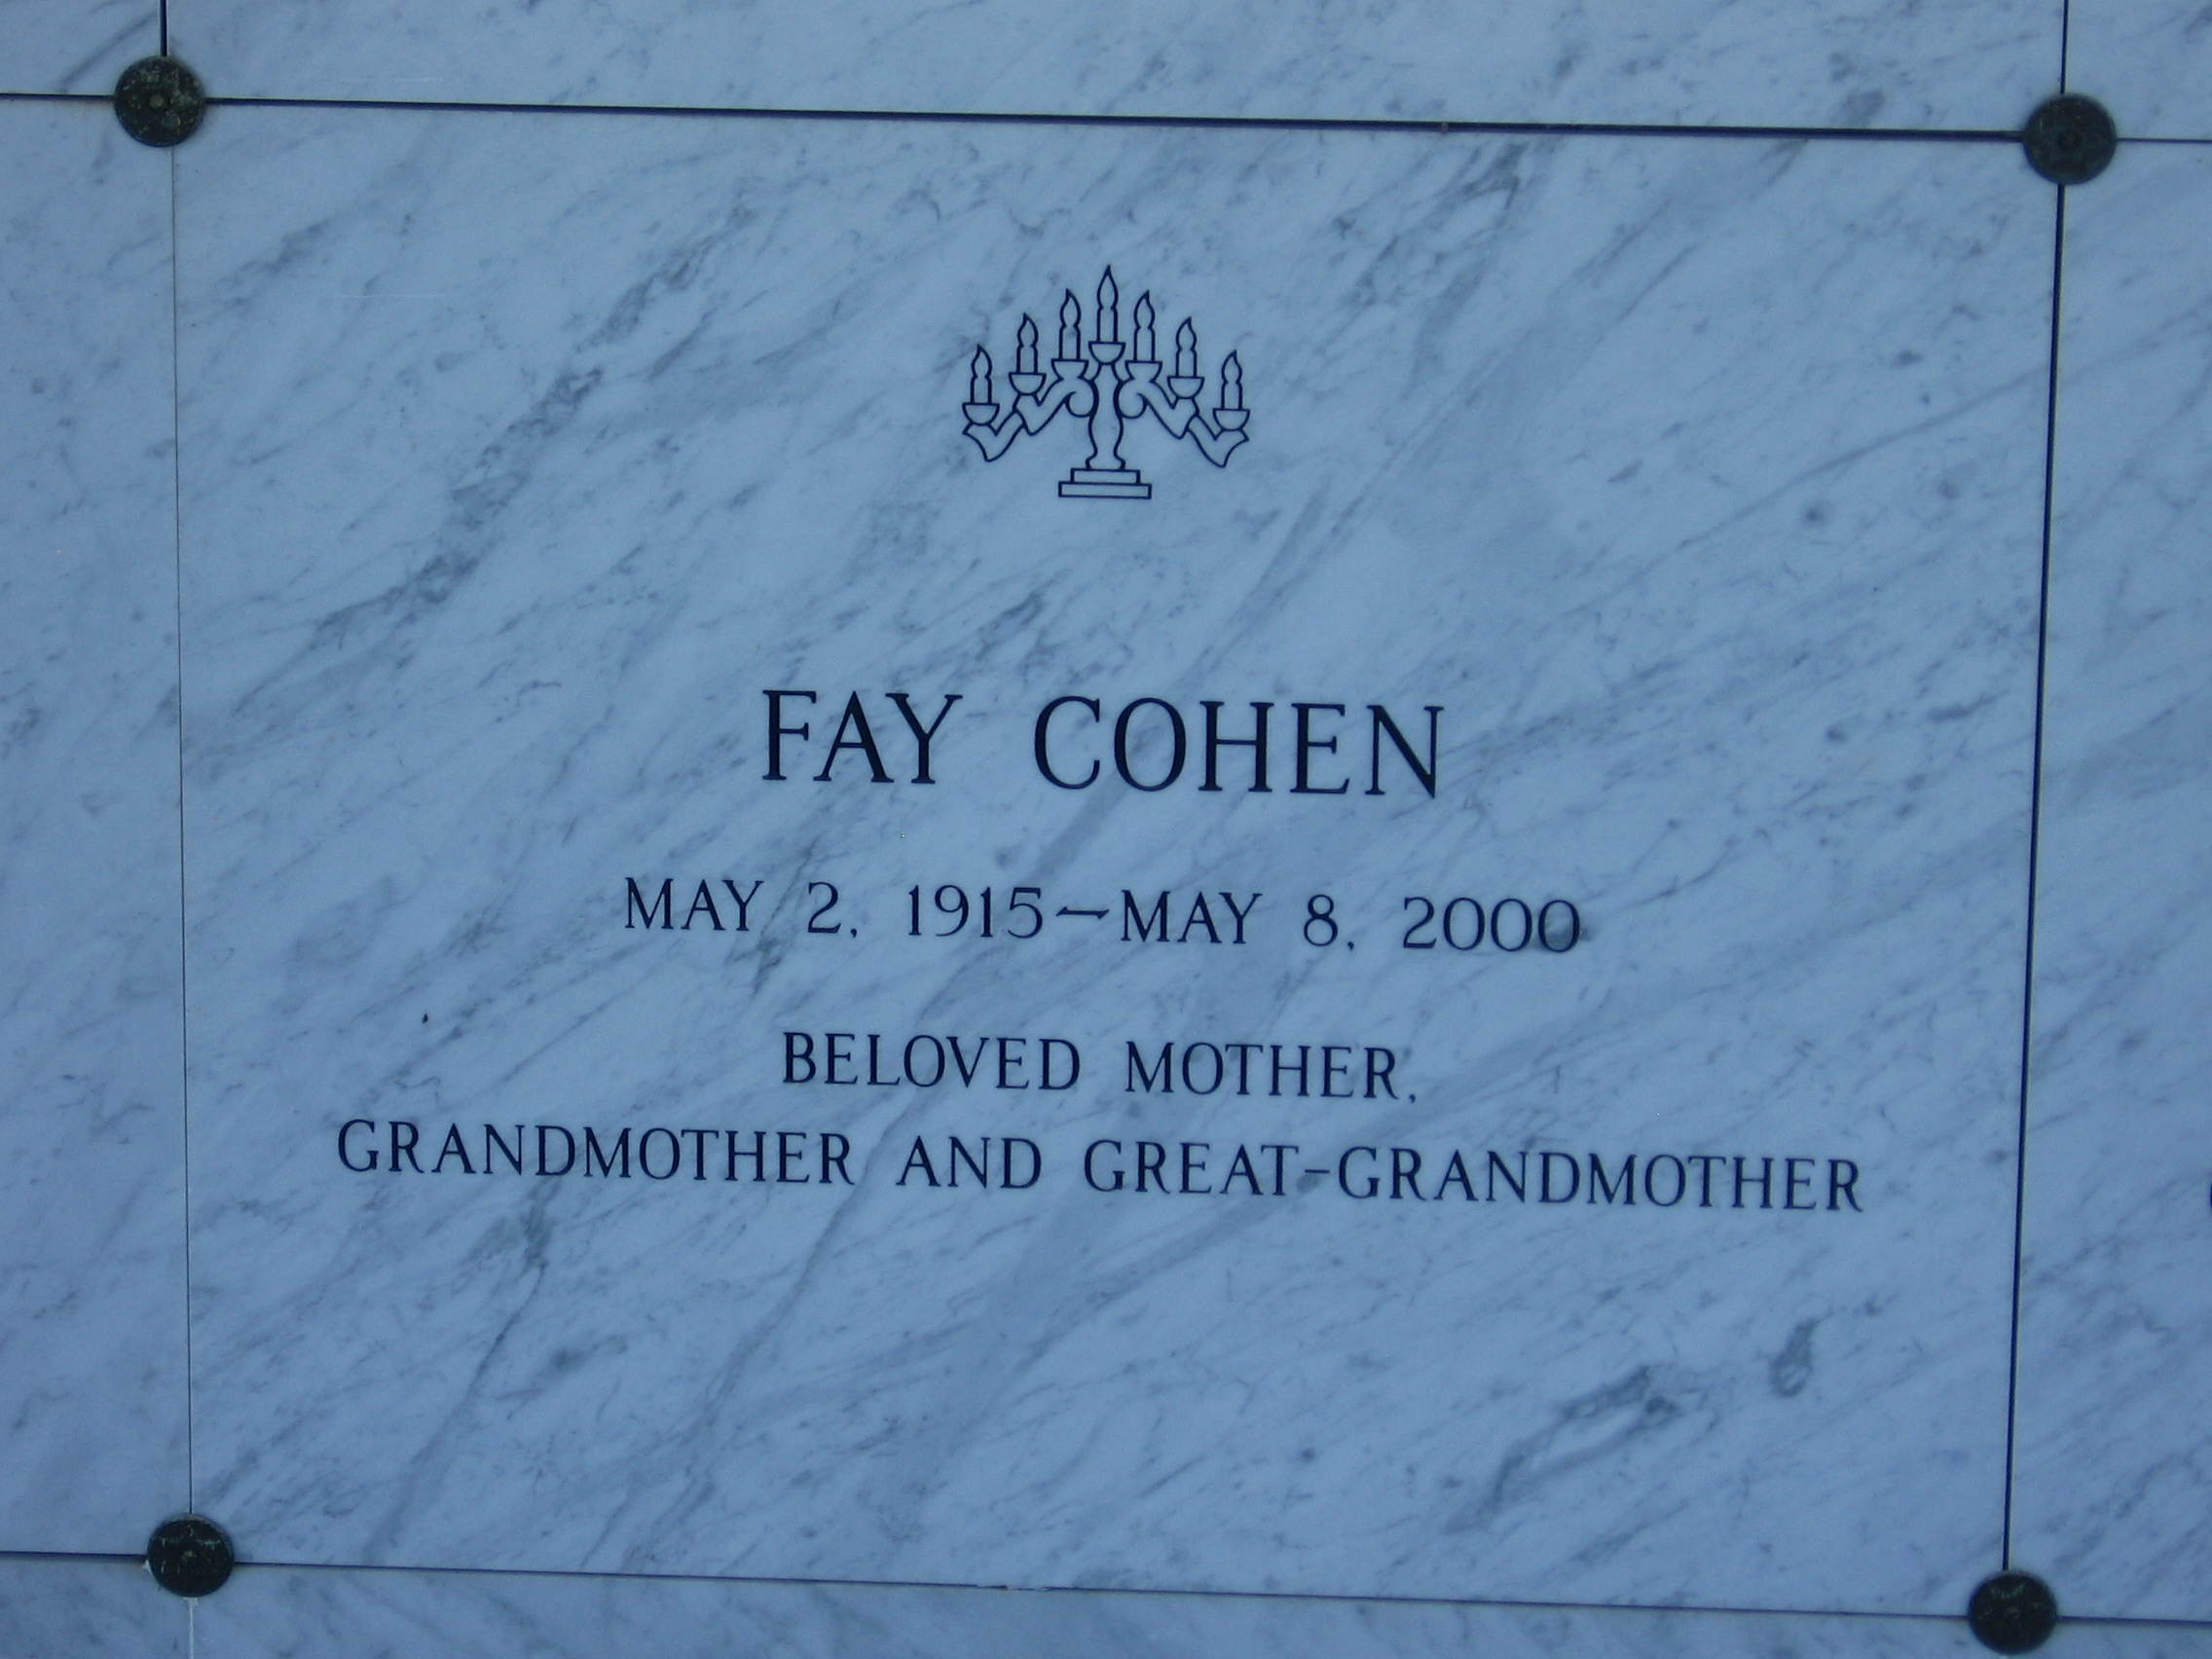 Fay Cohen